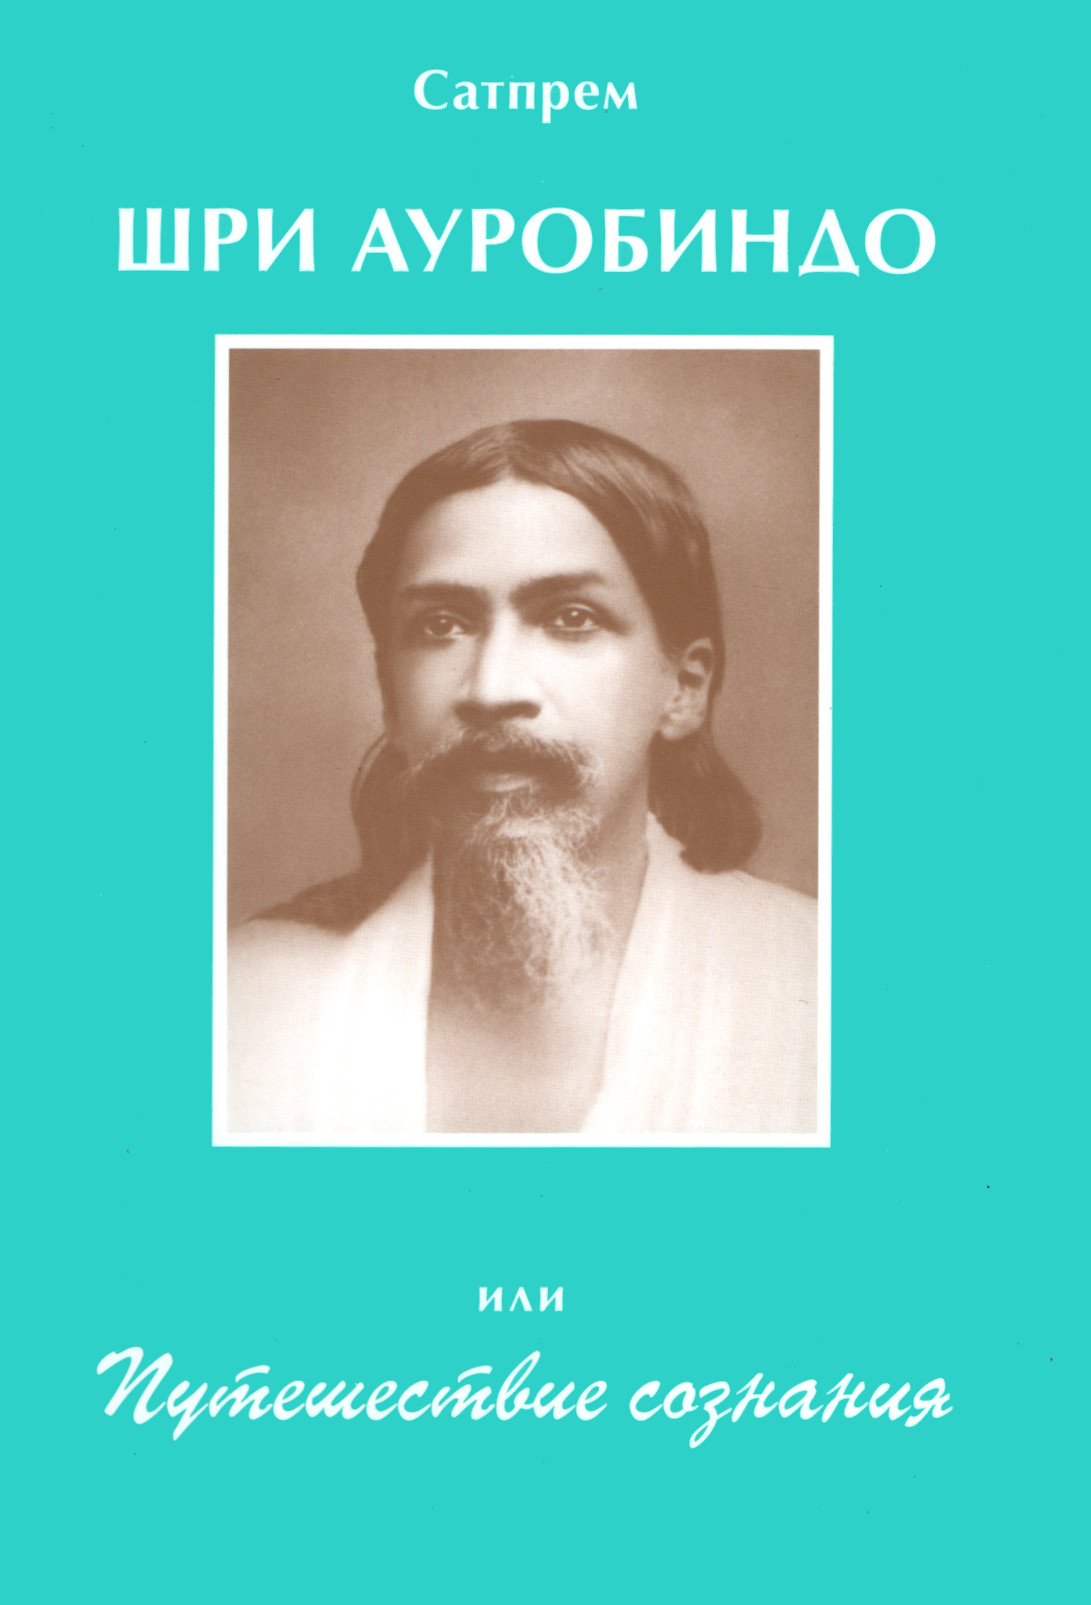 Купить книгу Шри Ауробиндо, или Путешествие сознания Сатпрем в интернет-магазине Ариаварта